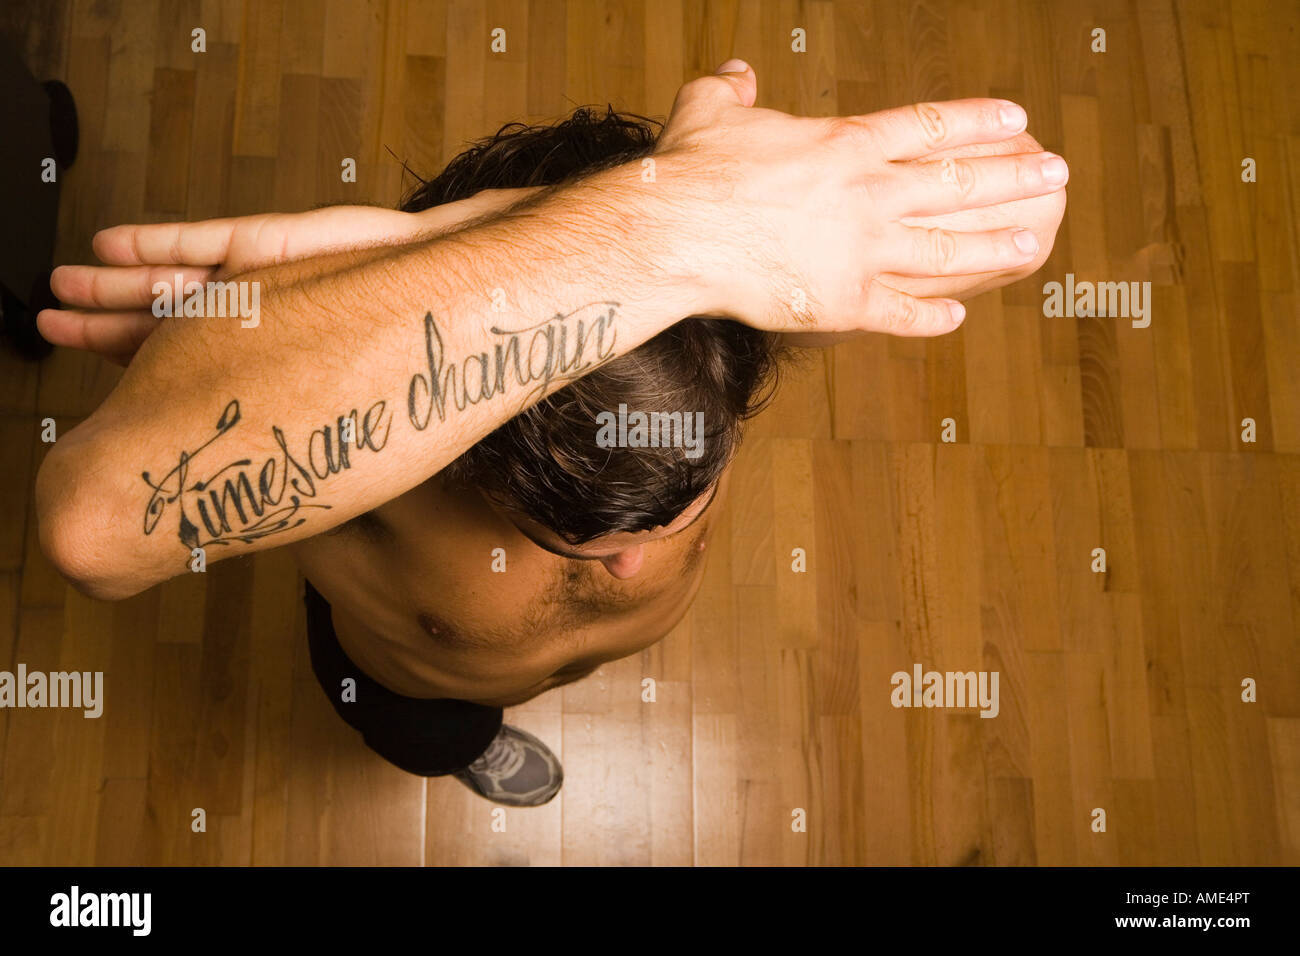 Mann unterarm tattoo Tattoo Ideen